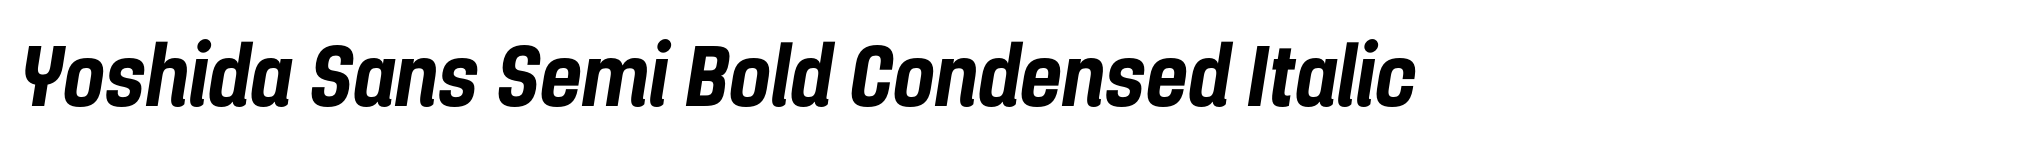 Yoshida Sans Semi Bold Condensed Italic image